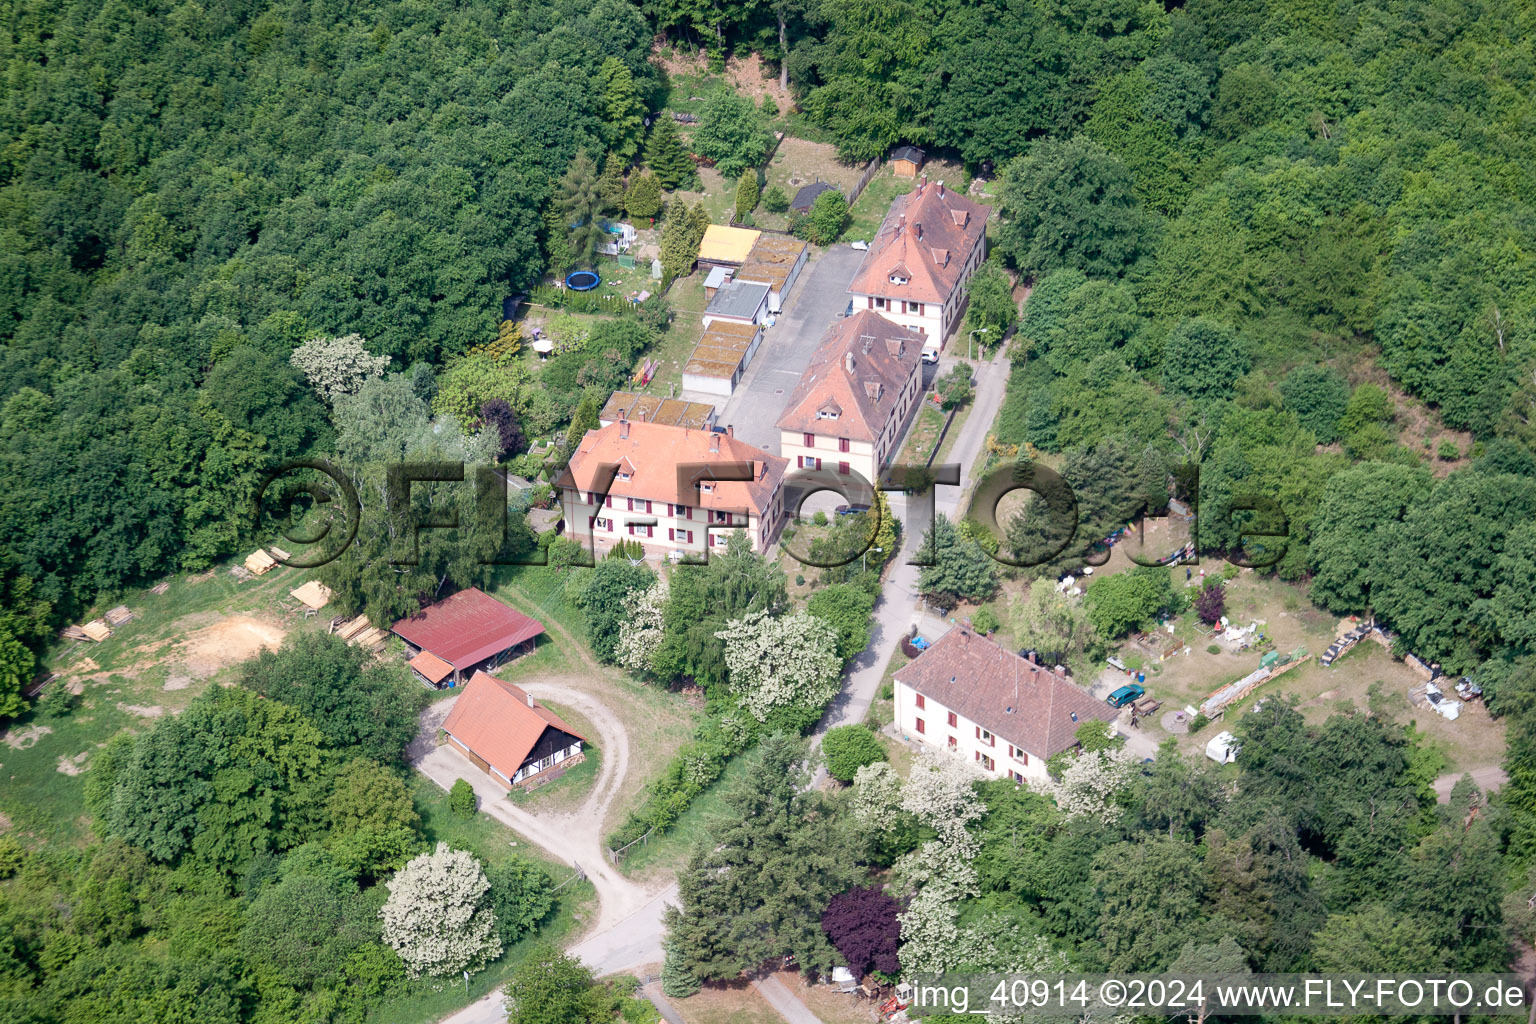 Scheibenhardt (Pfalz), Seufzerallee 4 im Bundesland Rheinland-Pfalz, Deutschland von einer Drohne aus